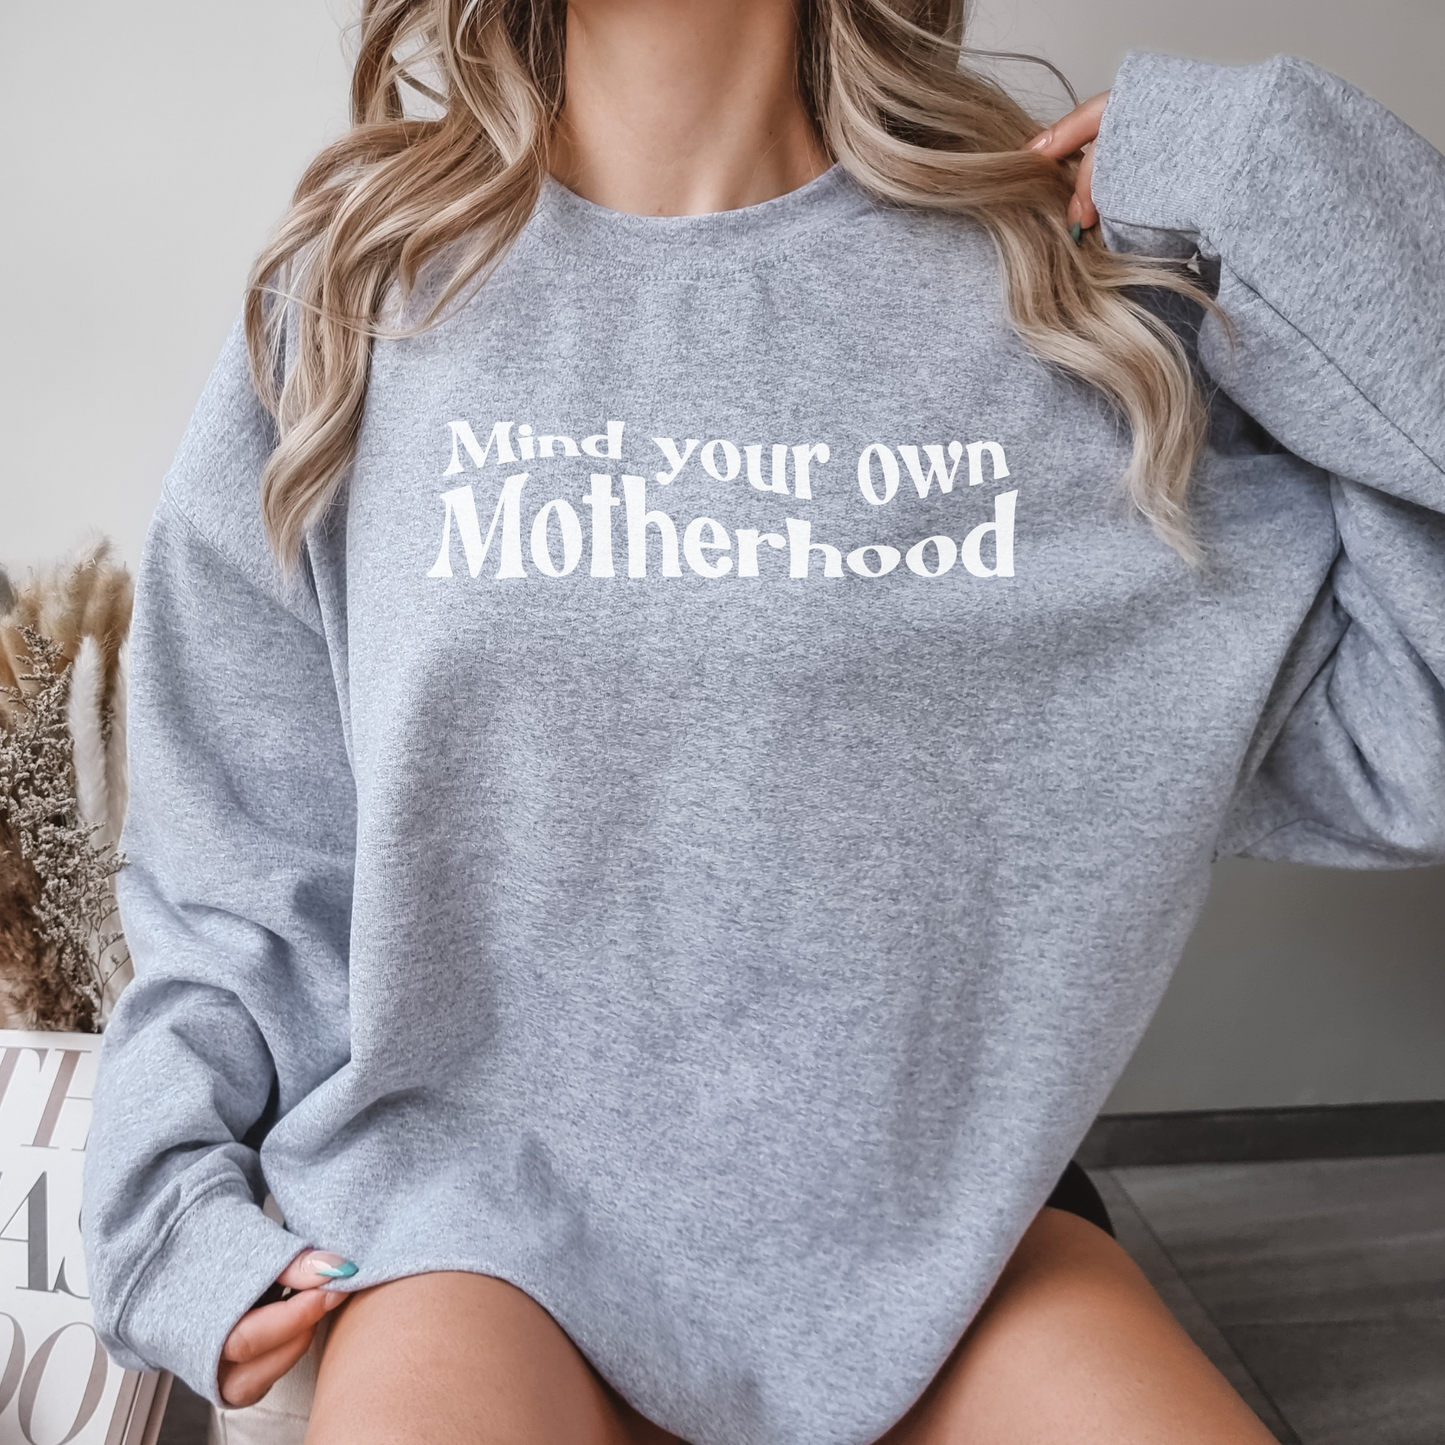 Mind Your Own Motherhood Sweatshirt, Mother Mama Mom Sweatshirt, Cute Trendy Mom Sweatshirt, Women Hoodies, Funny Sarcastic Sweatshirt